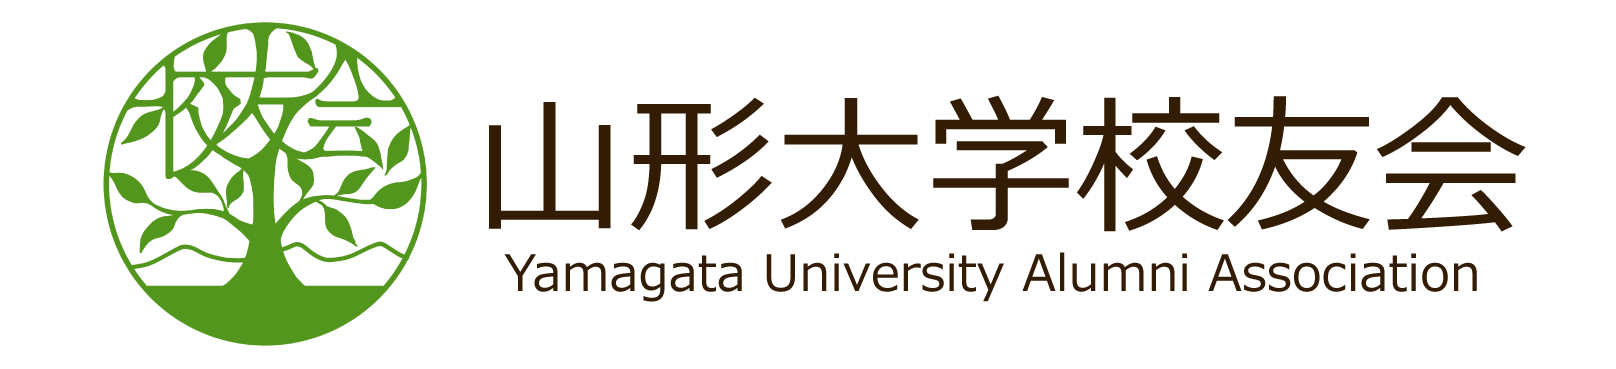 山形大学校友会(Yamagata University Alumni Association)